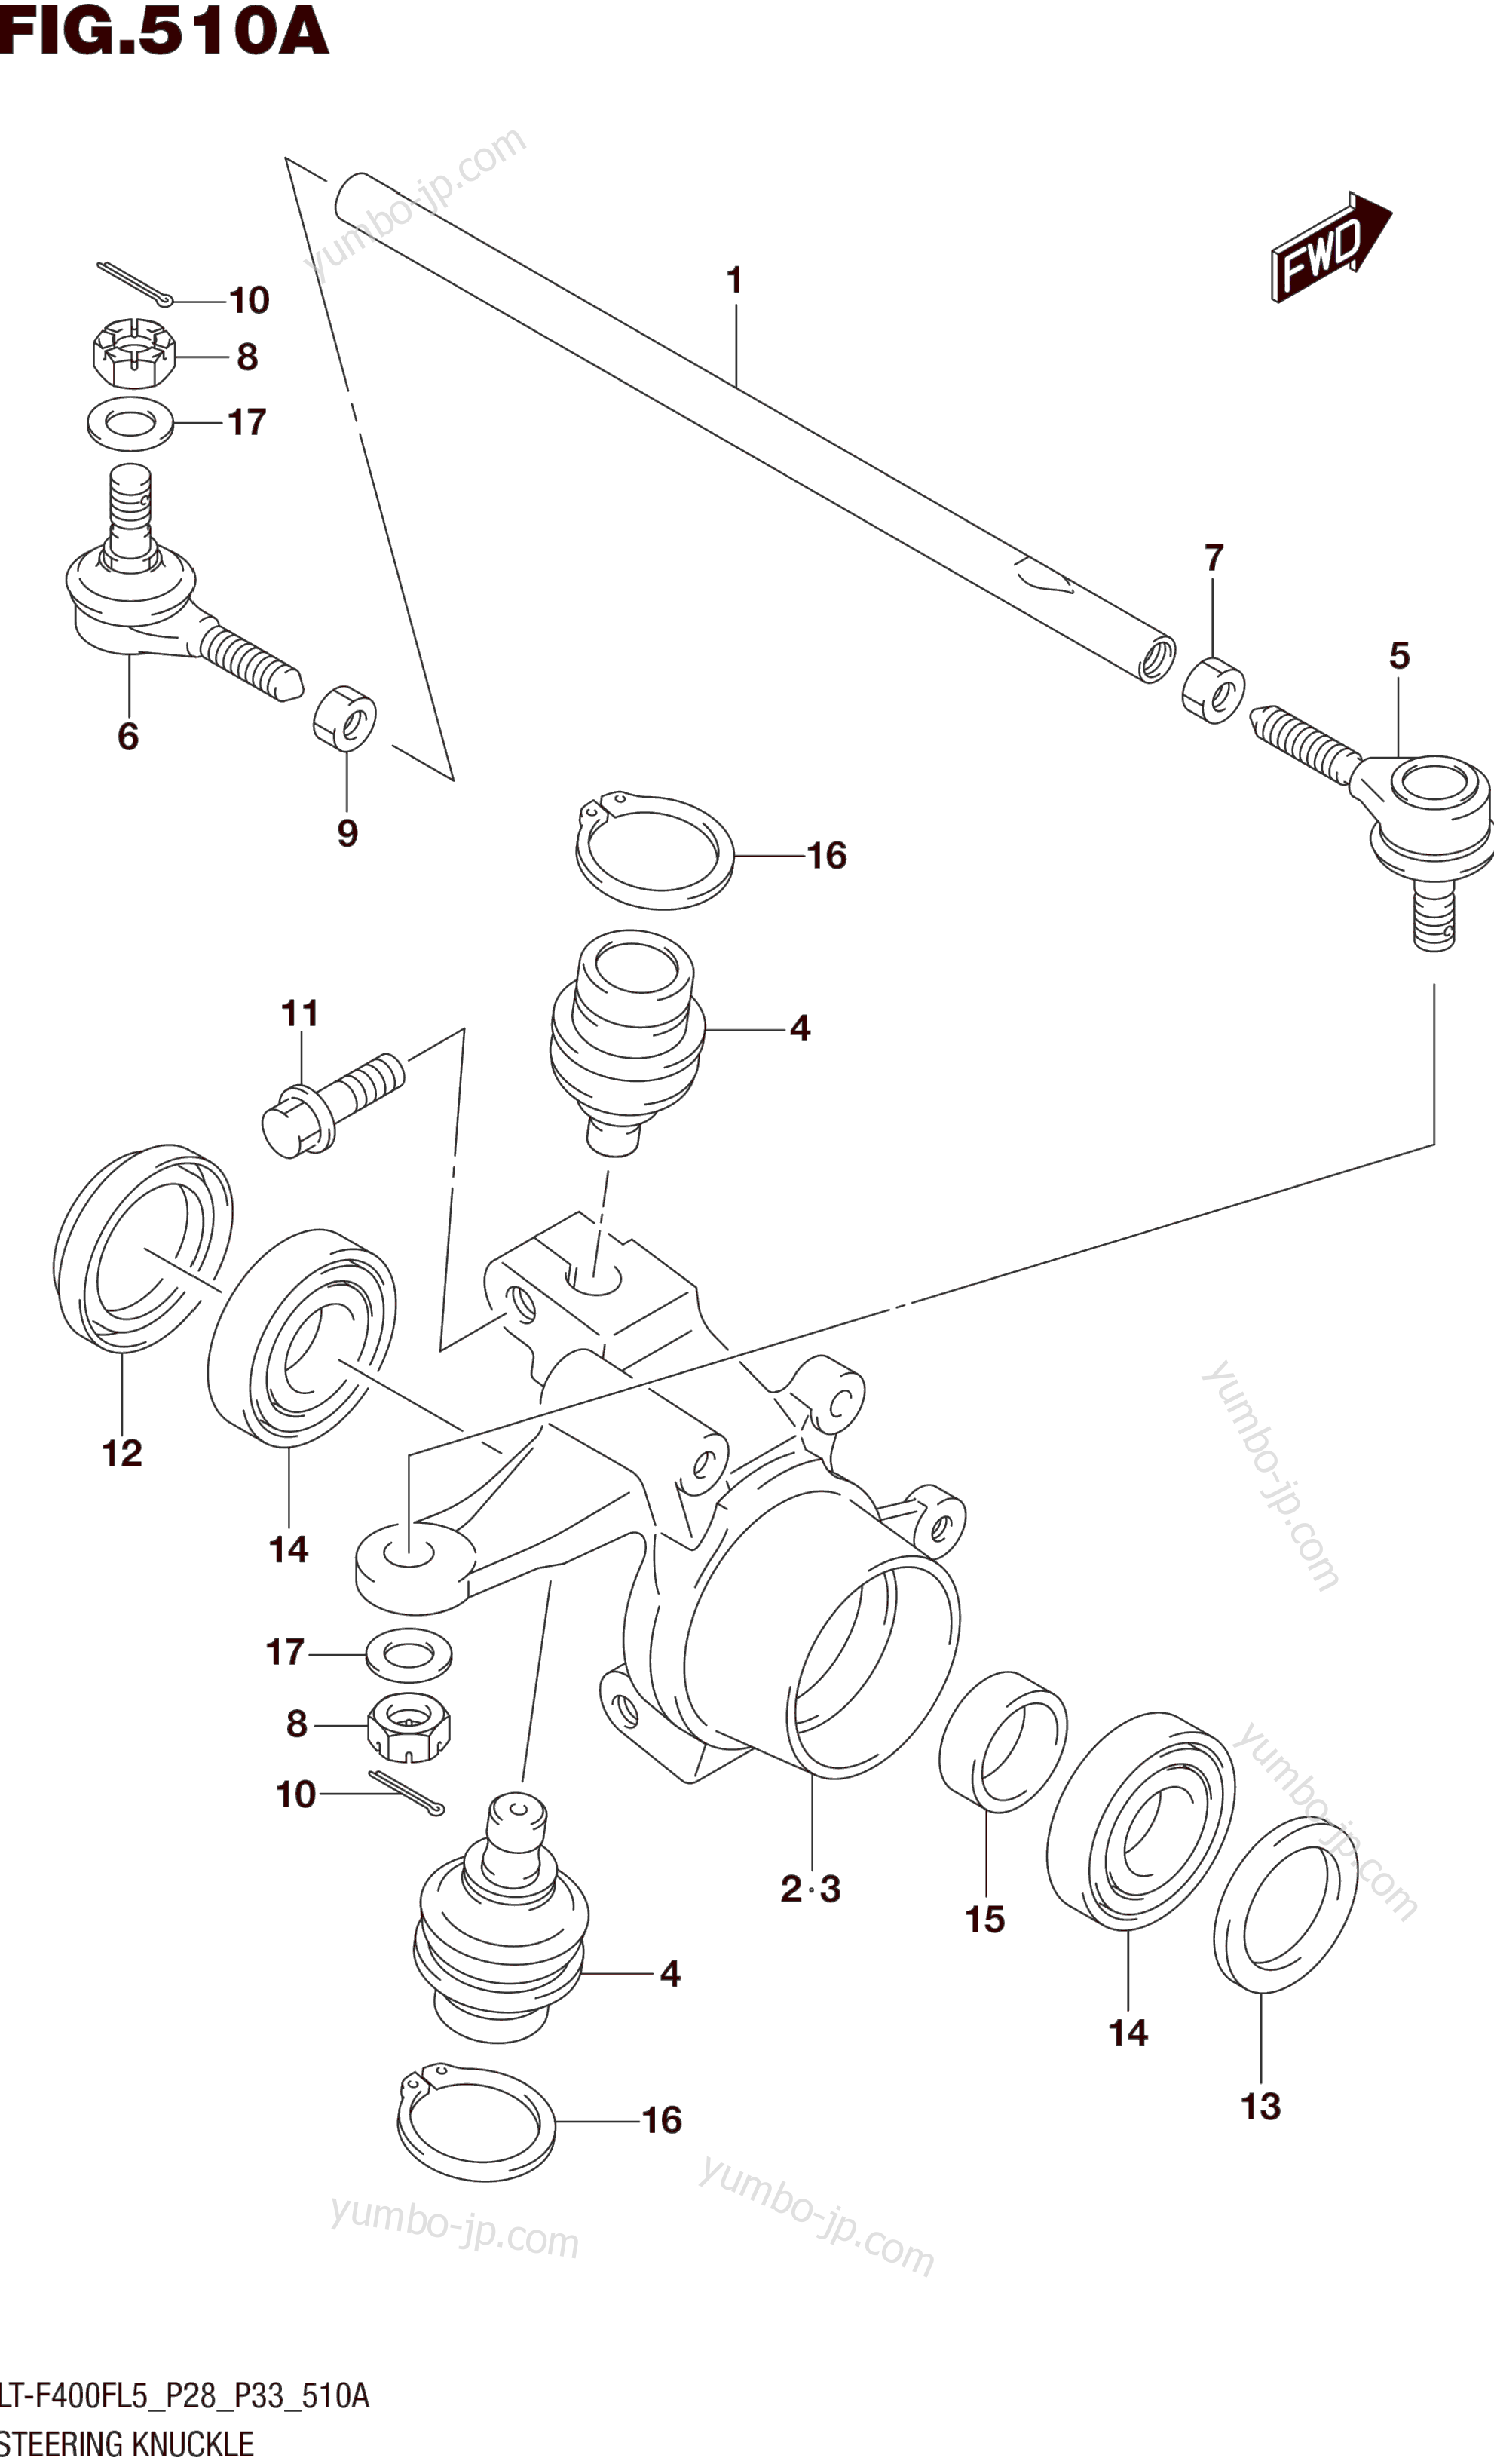 STEERING KNUCKLE (LT-F400FL5 P28) для квадроциклов SUZUKI LT-F400F 2015 г.